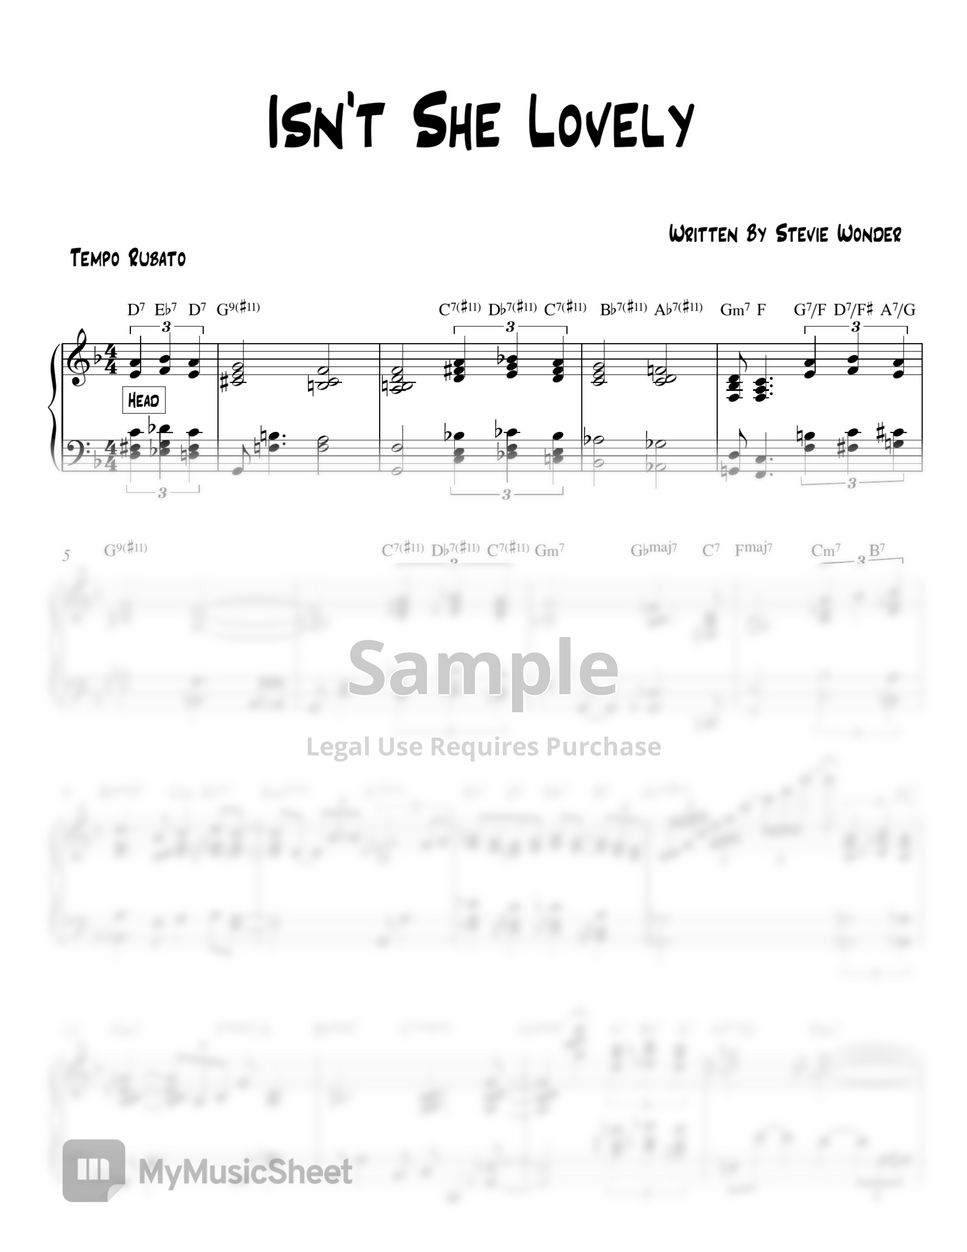 Stevie Wonder - Isn't She Lovely  Piano Cover + Sheet Music 